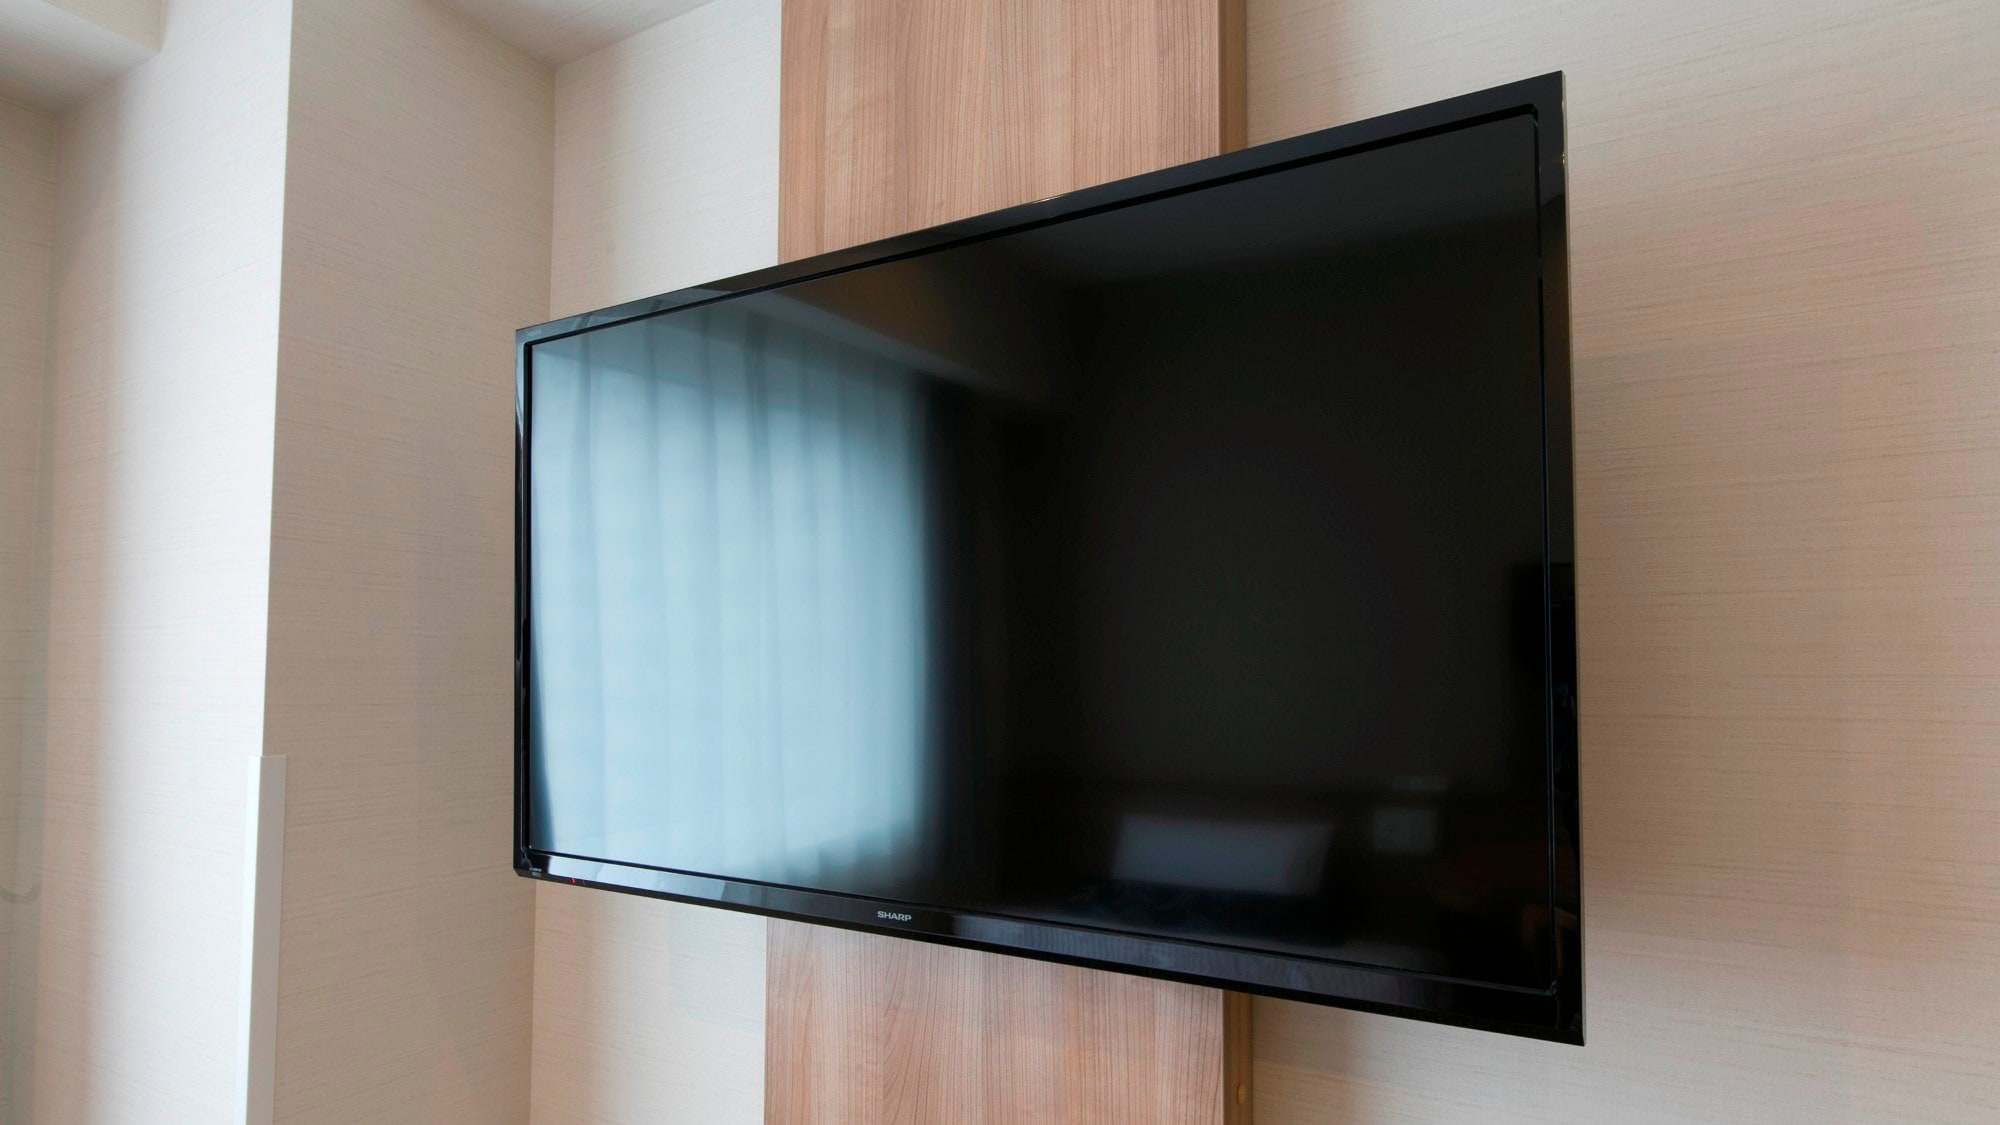 所有客房均配備大屏幕 40 英寸壁掛式電視